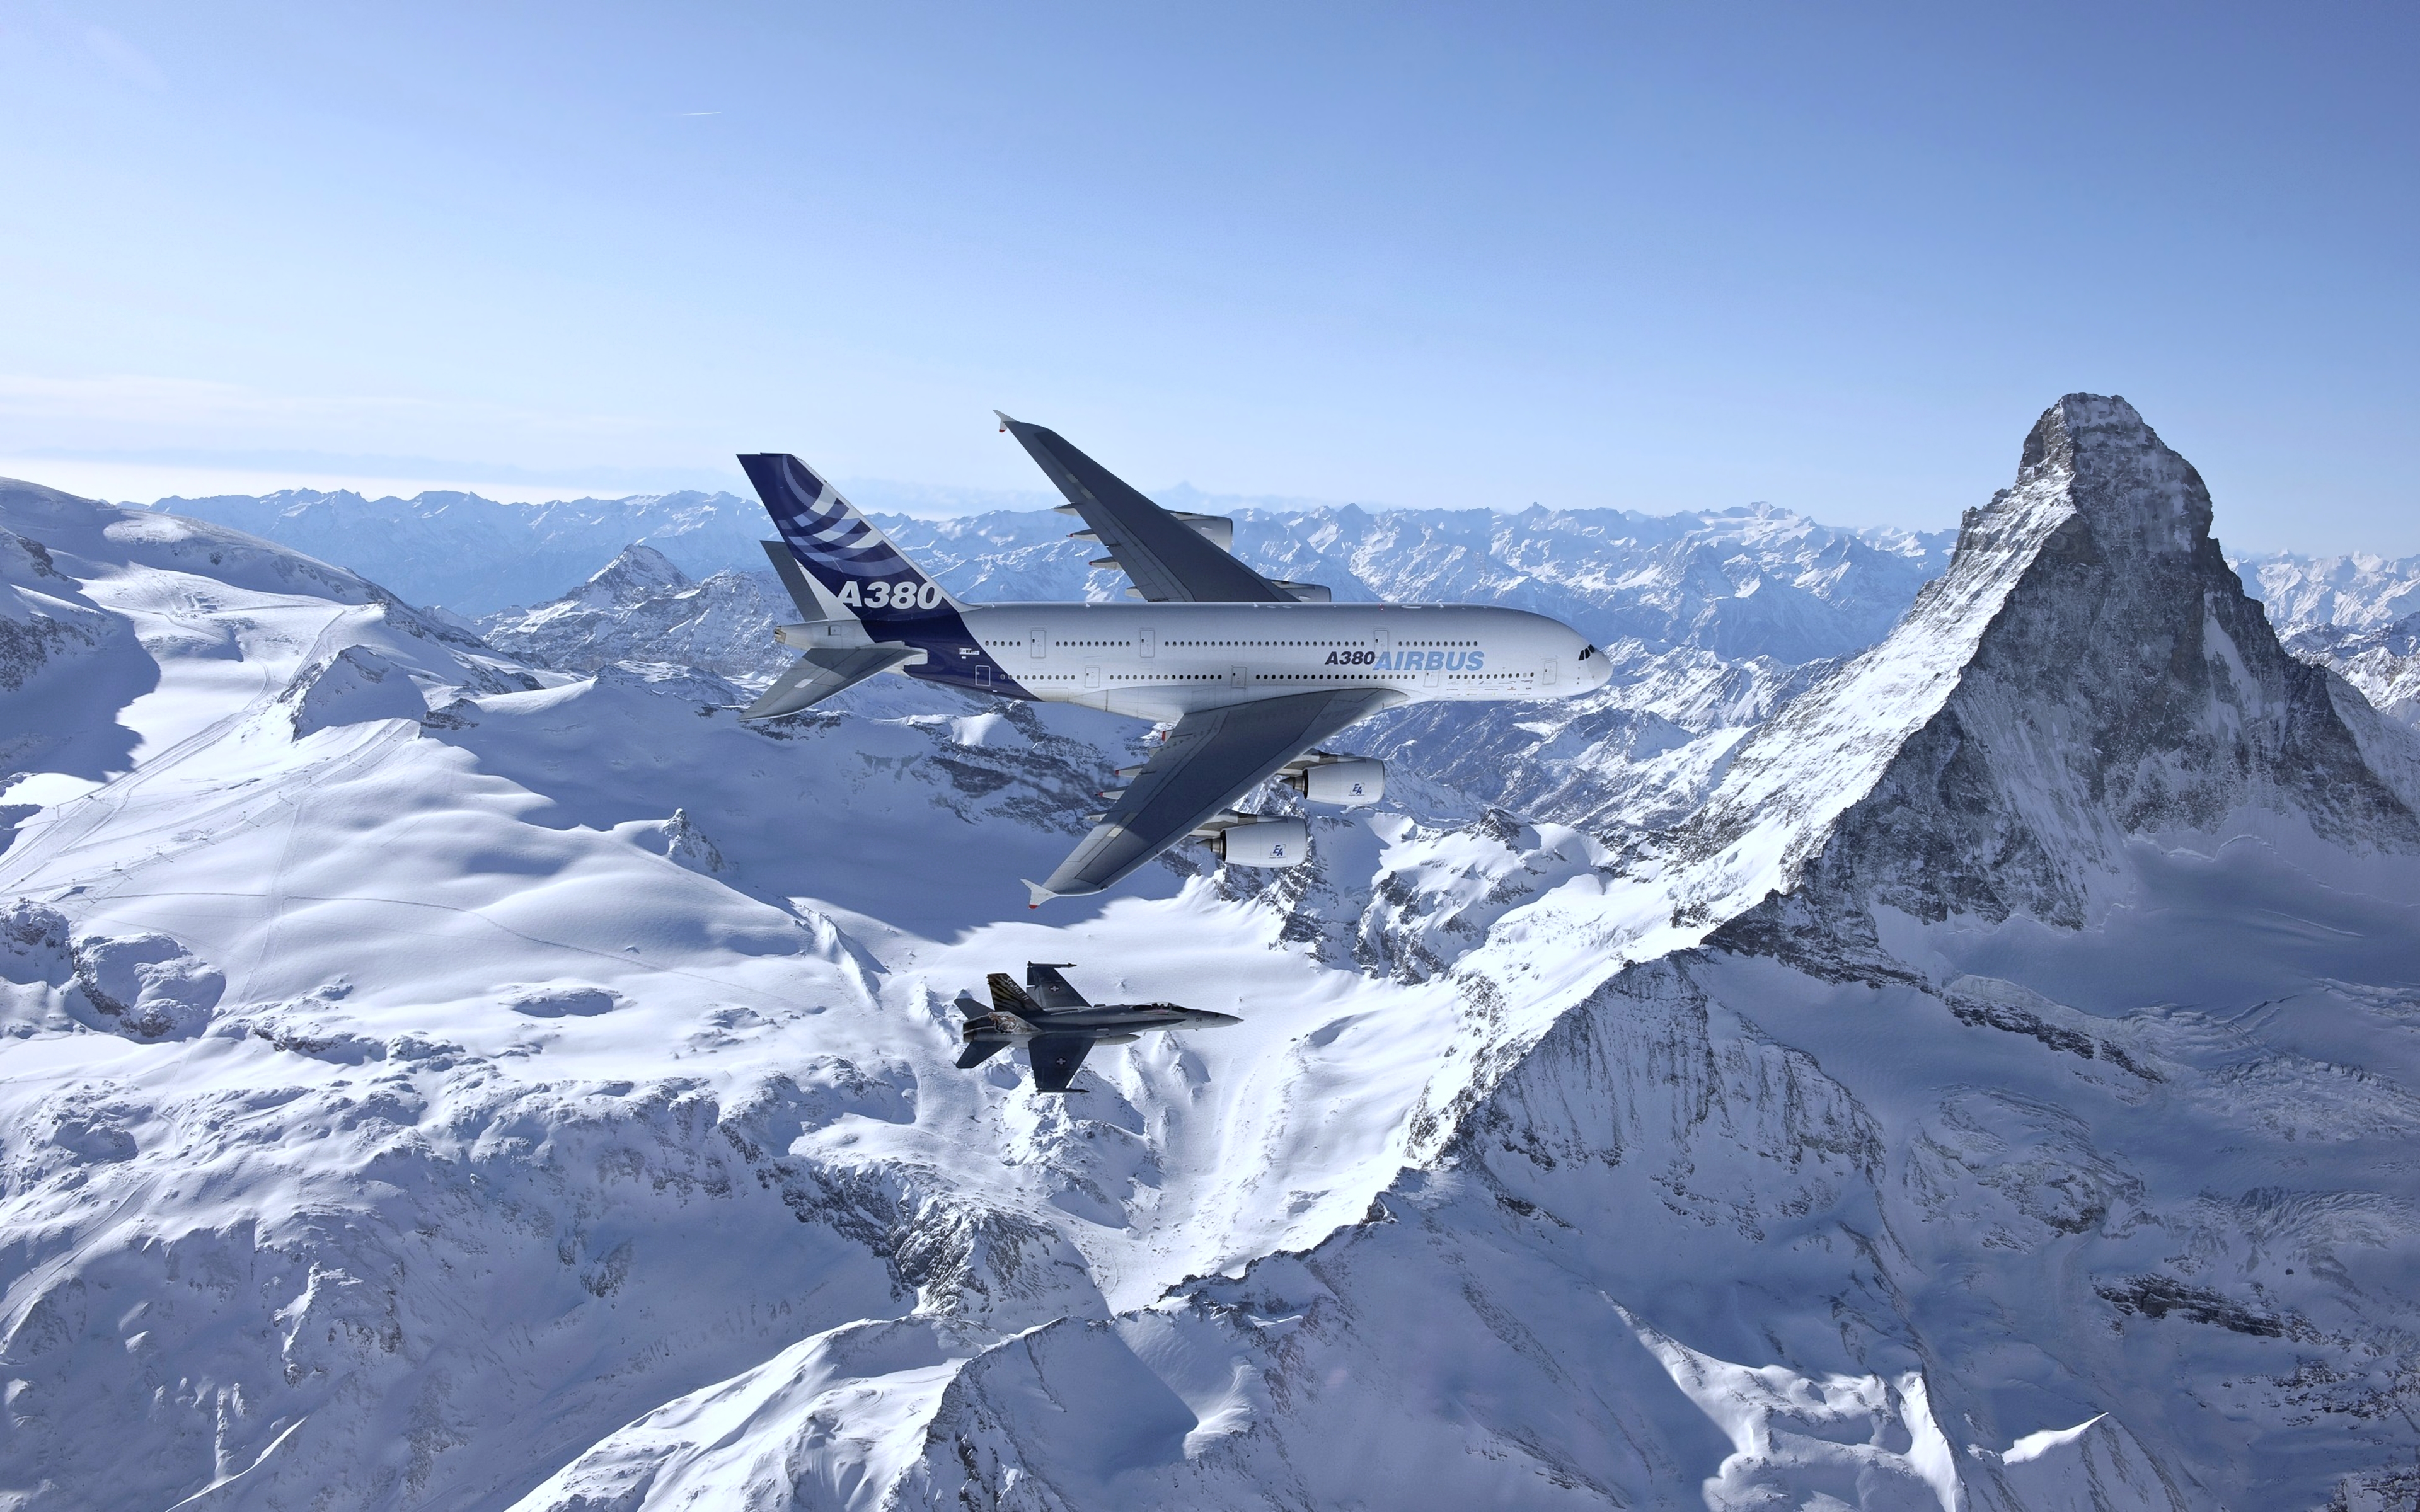 Гималаи Эверест панорама самолета